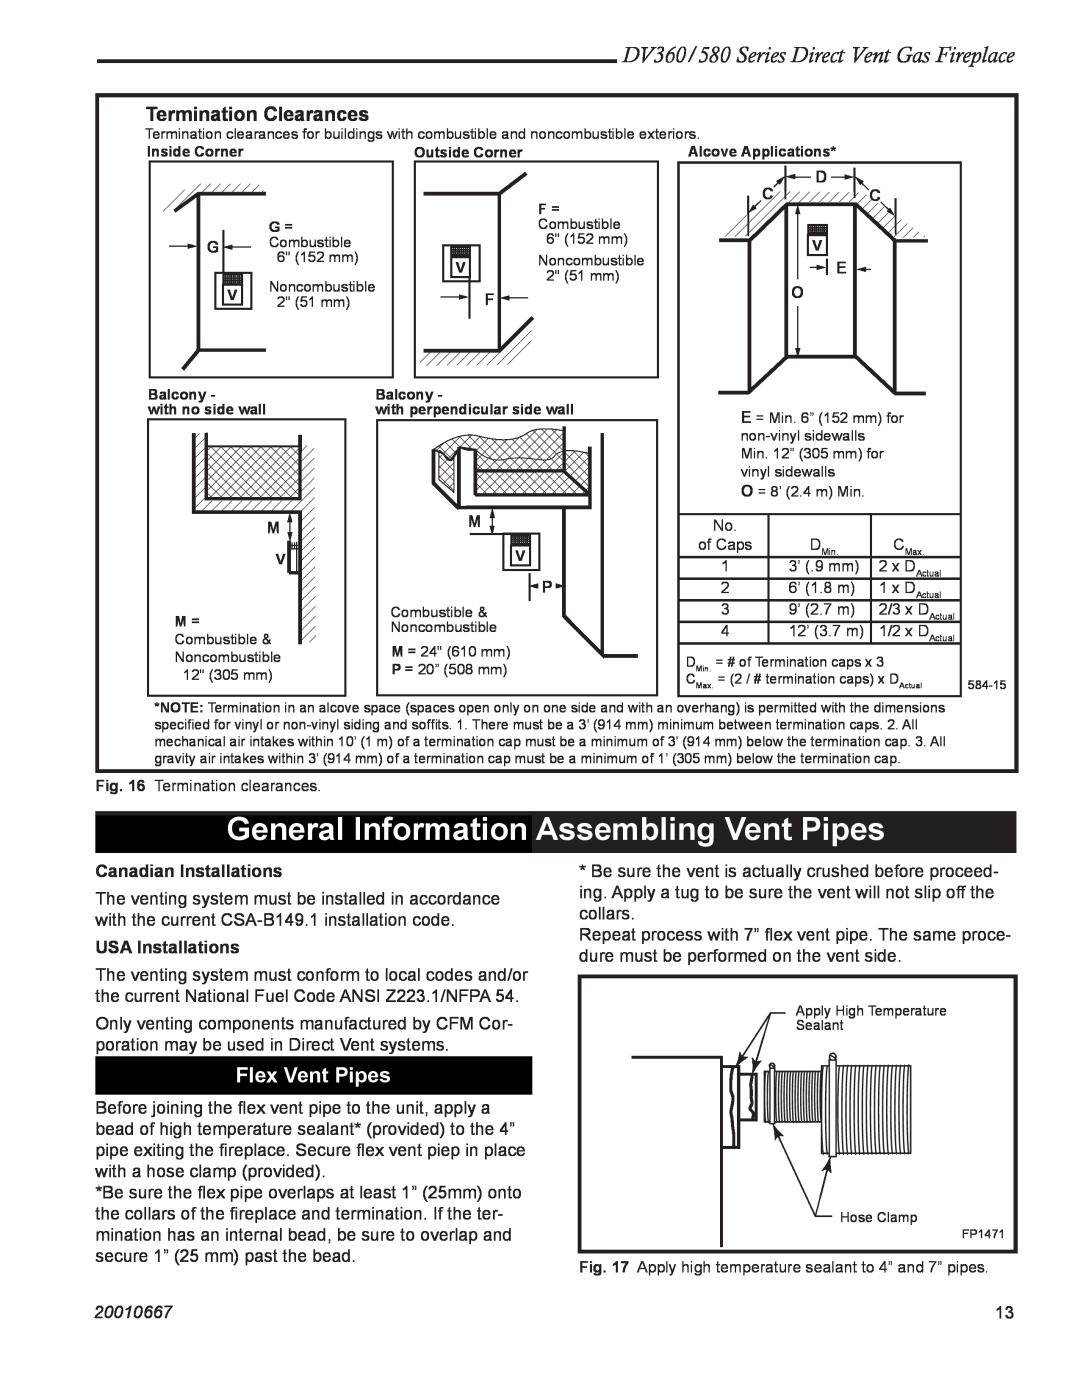 Vermont Casting DV580, DV360 General Information Assembling Vent Pipes, Flex Vent Pipes, Termination Clearances, D C C 